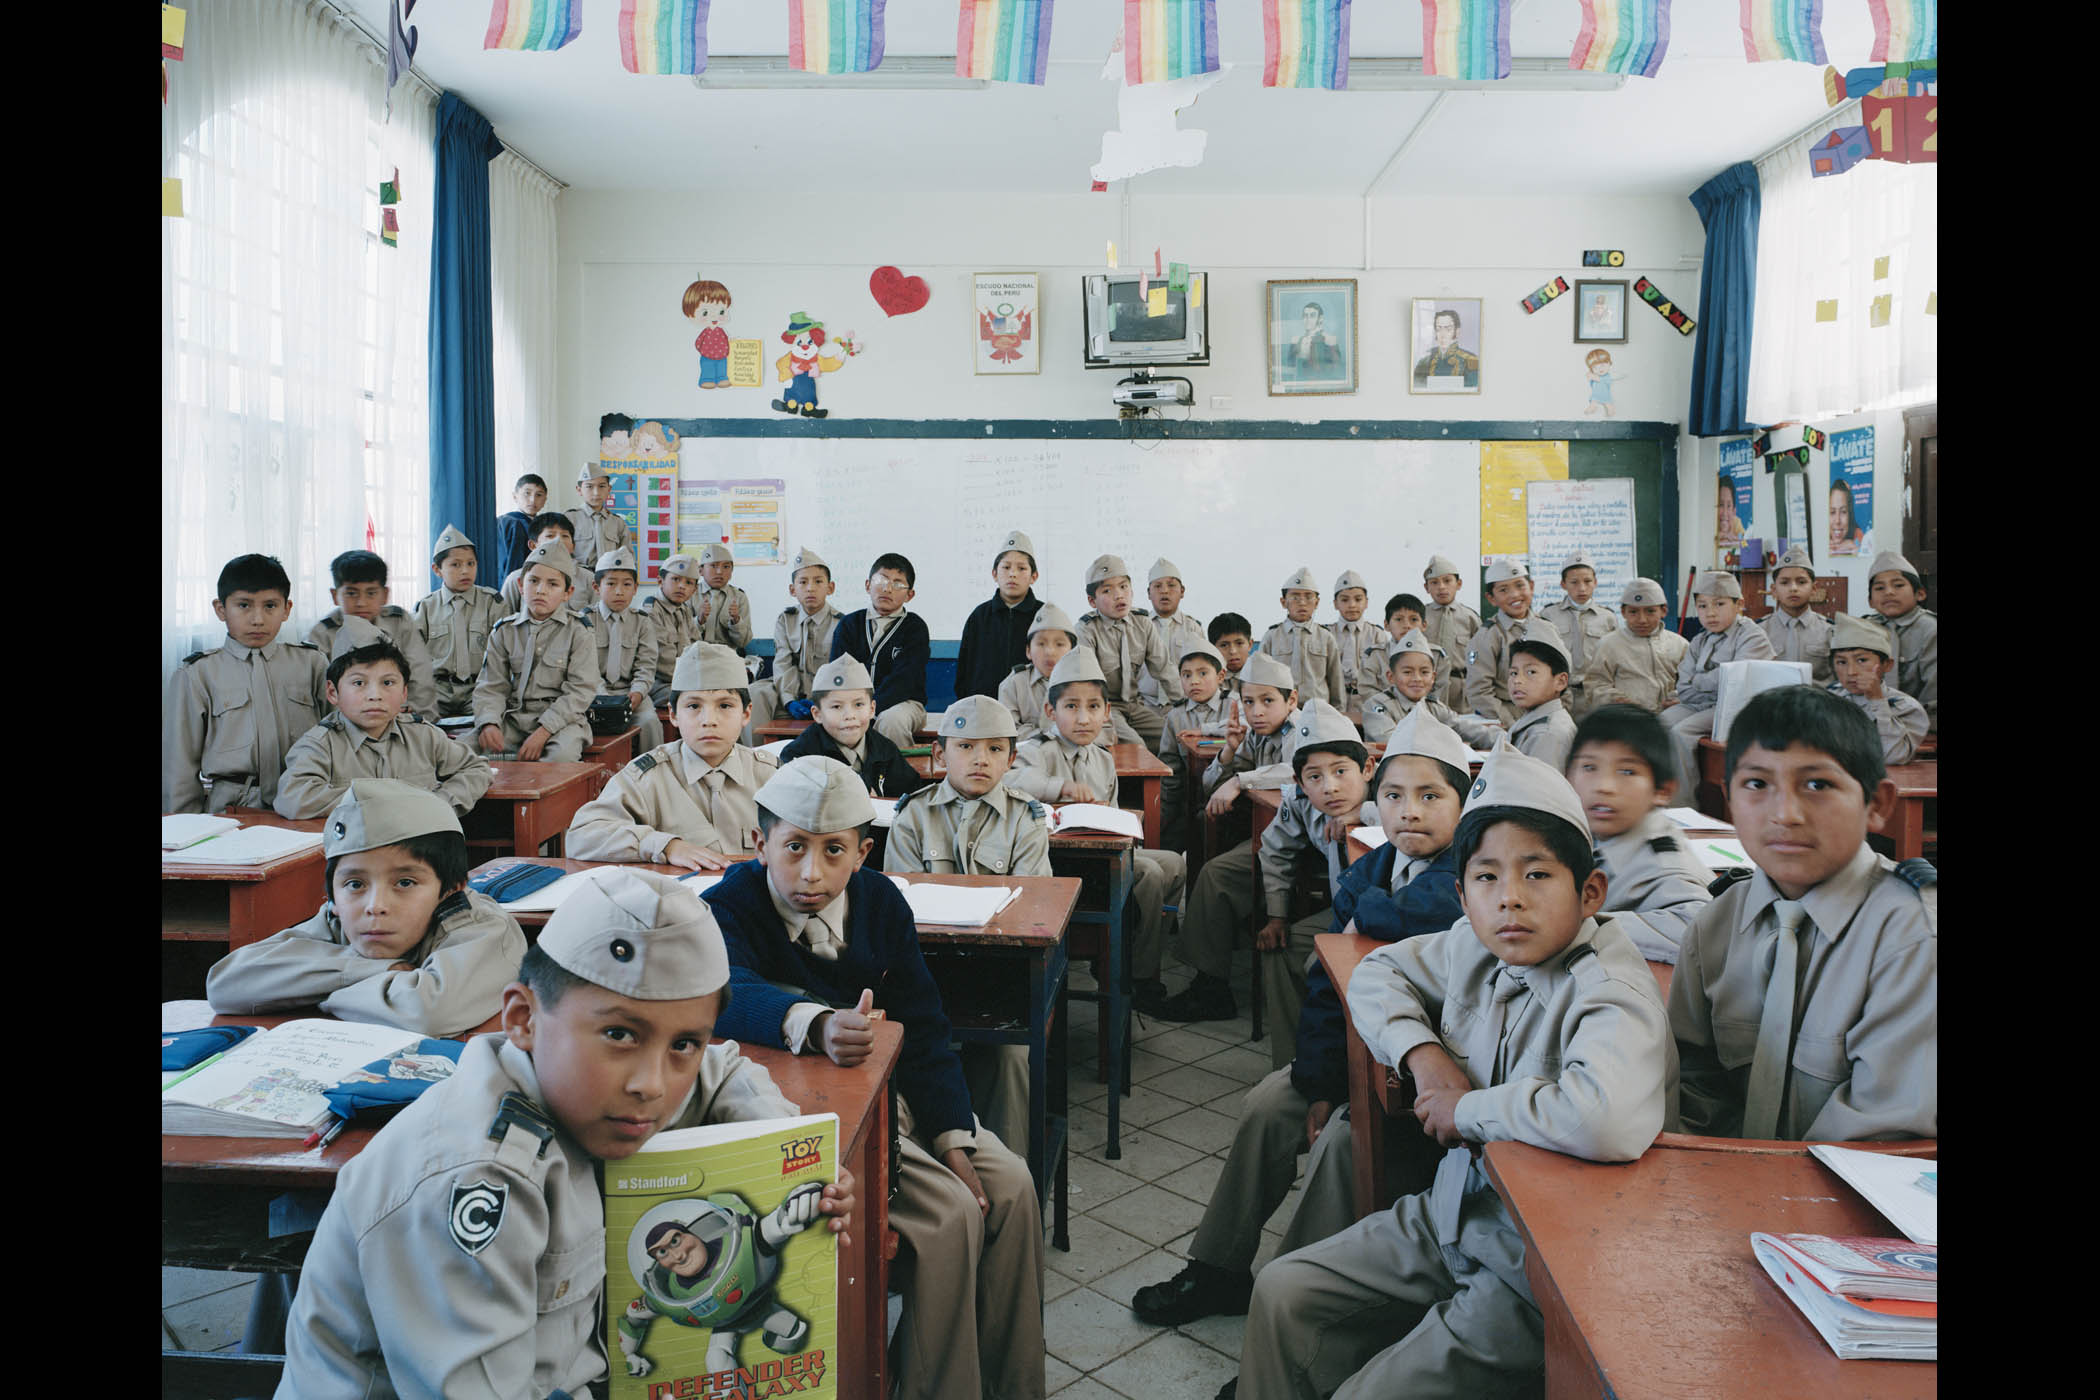 image: Colegio Nacional De Ciencias, Cusco, Peru. Grade 4 Primary, Mathematics. July 23, 2007.